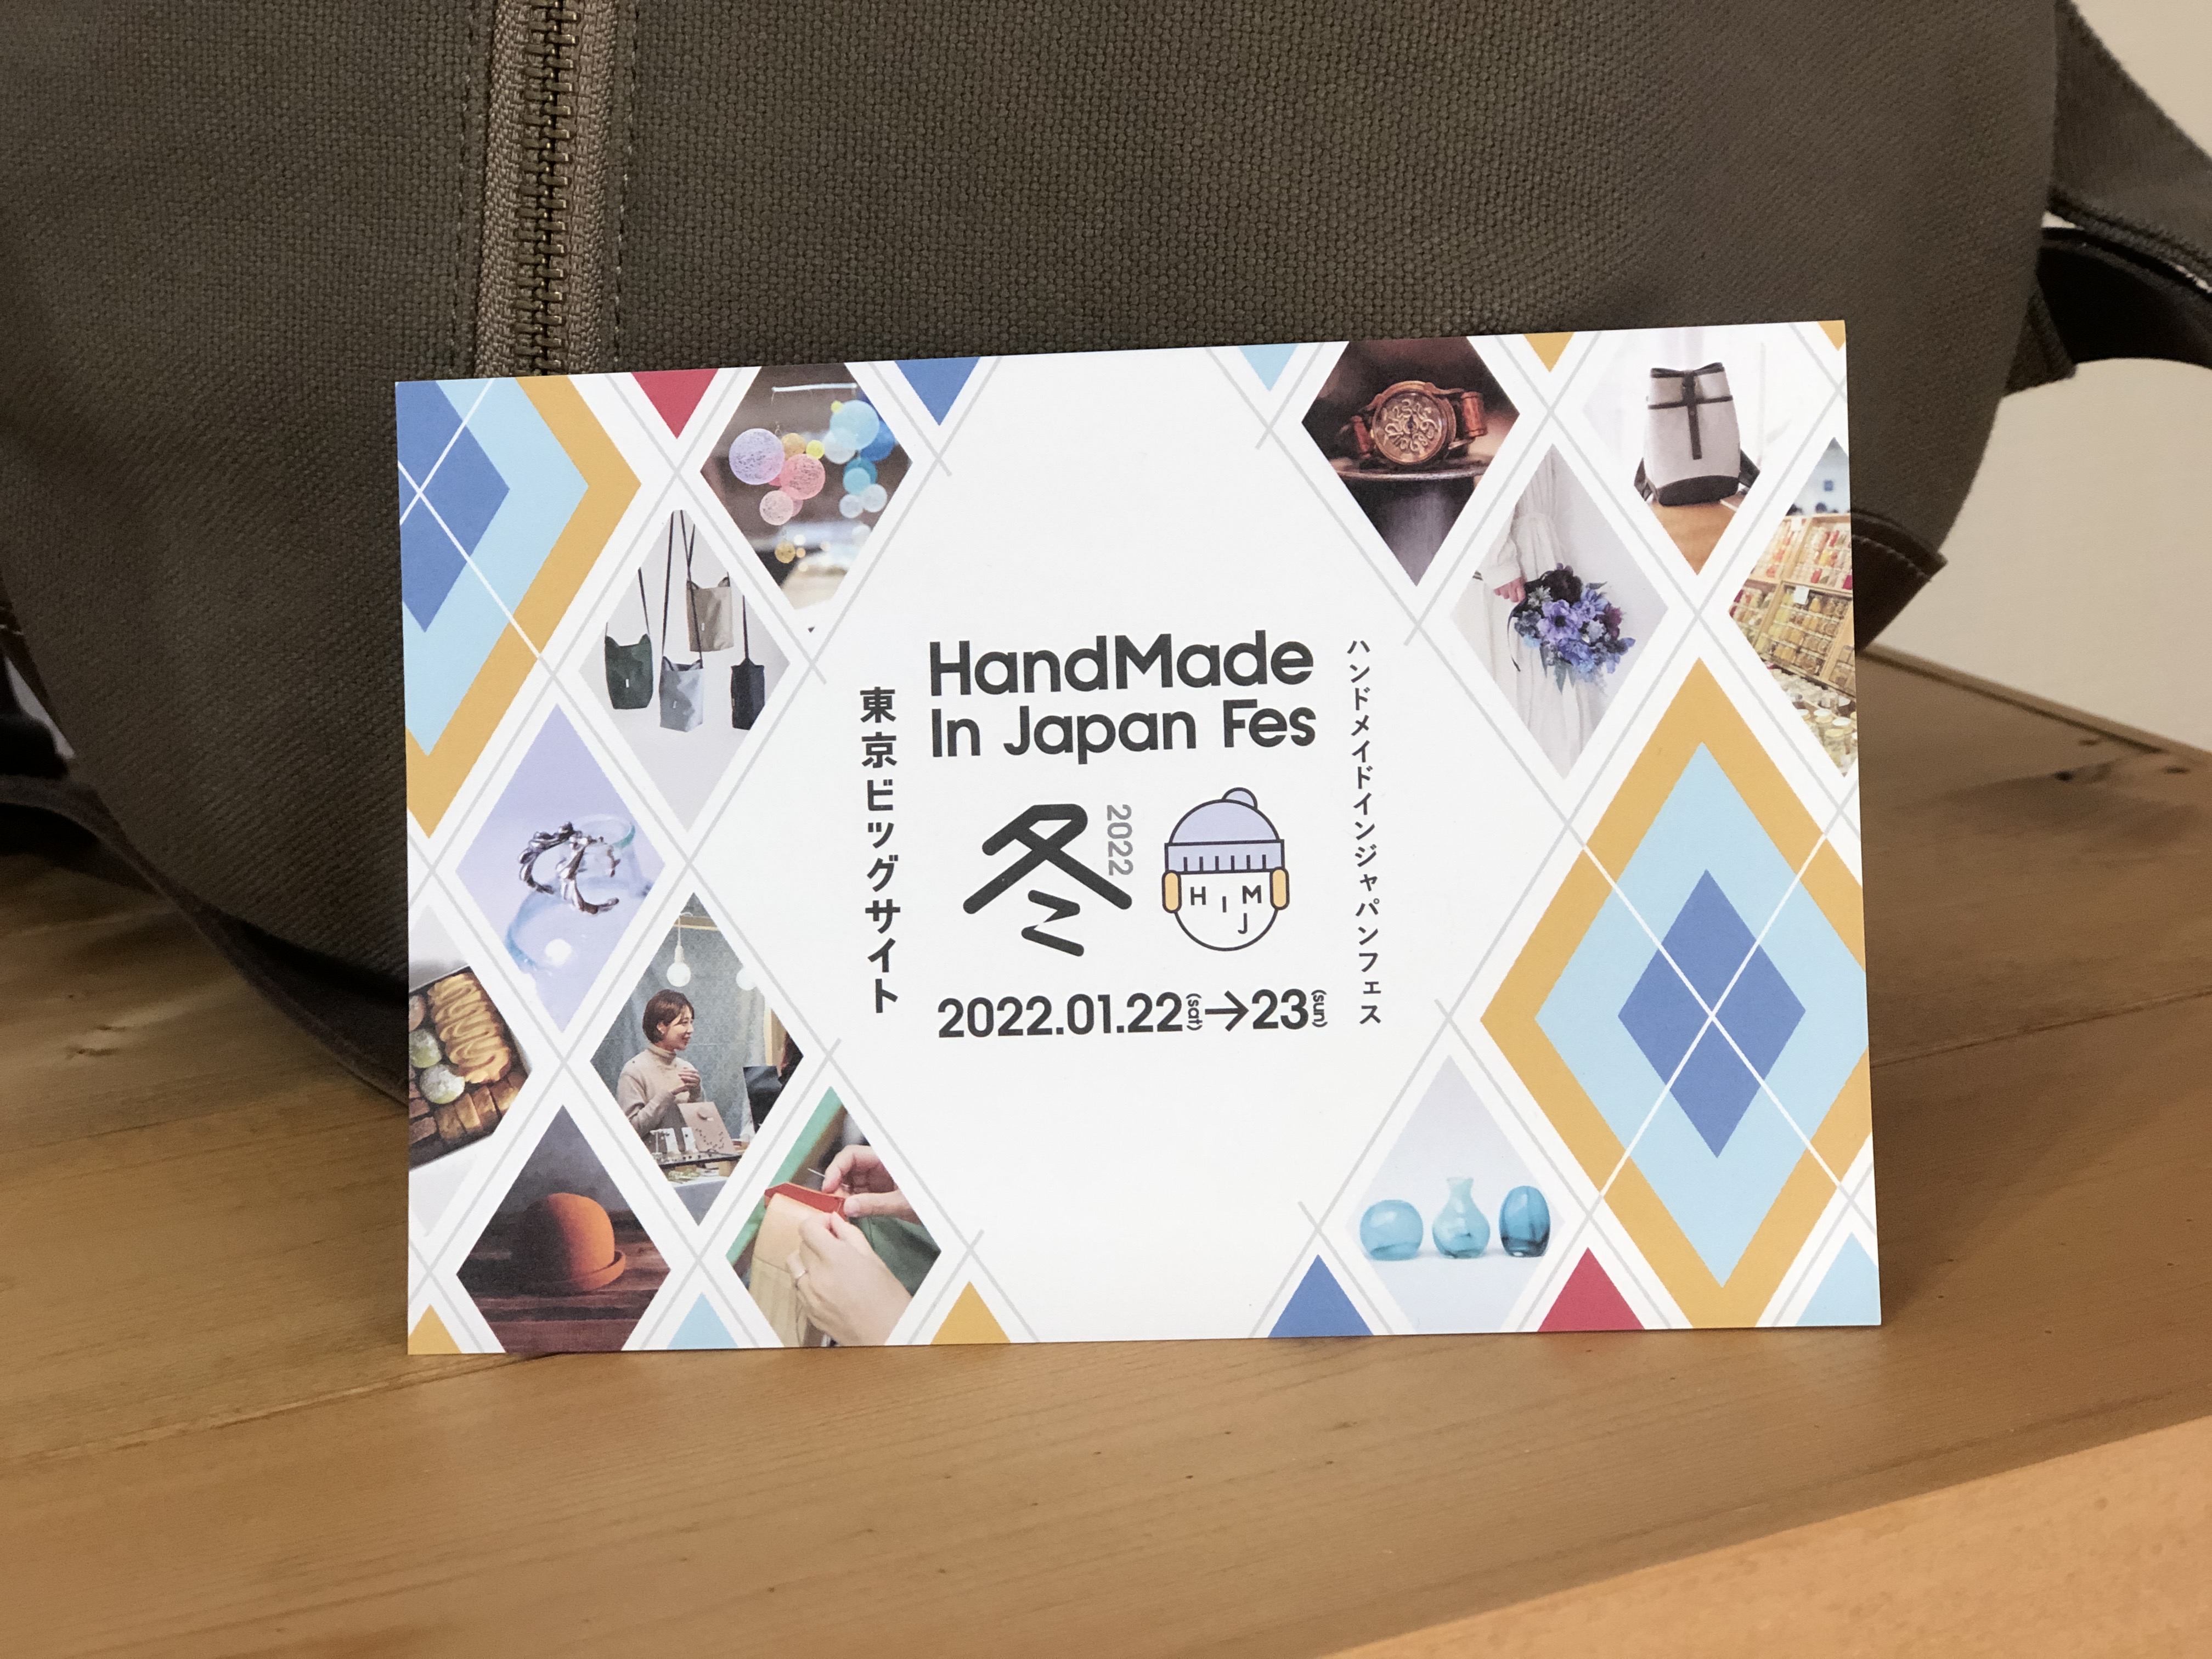 「HandMade In Japan Fes 冬2022」 出店決定!!